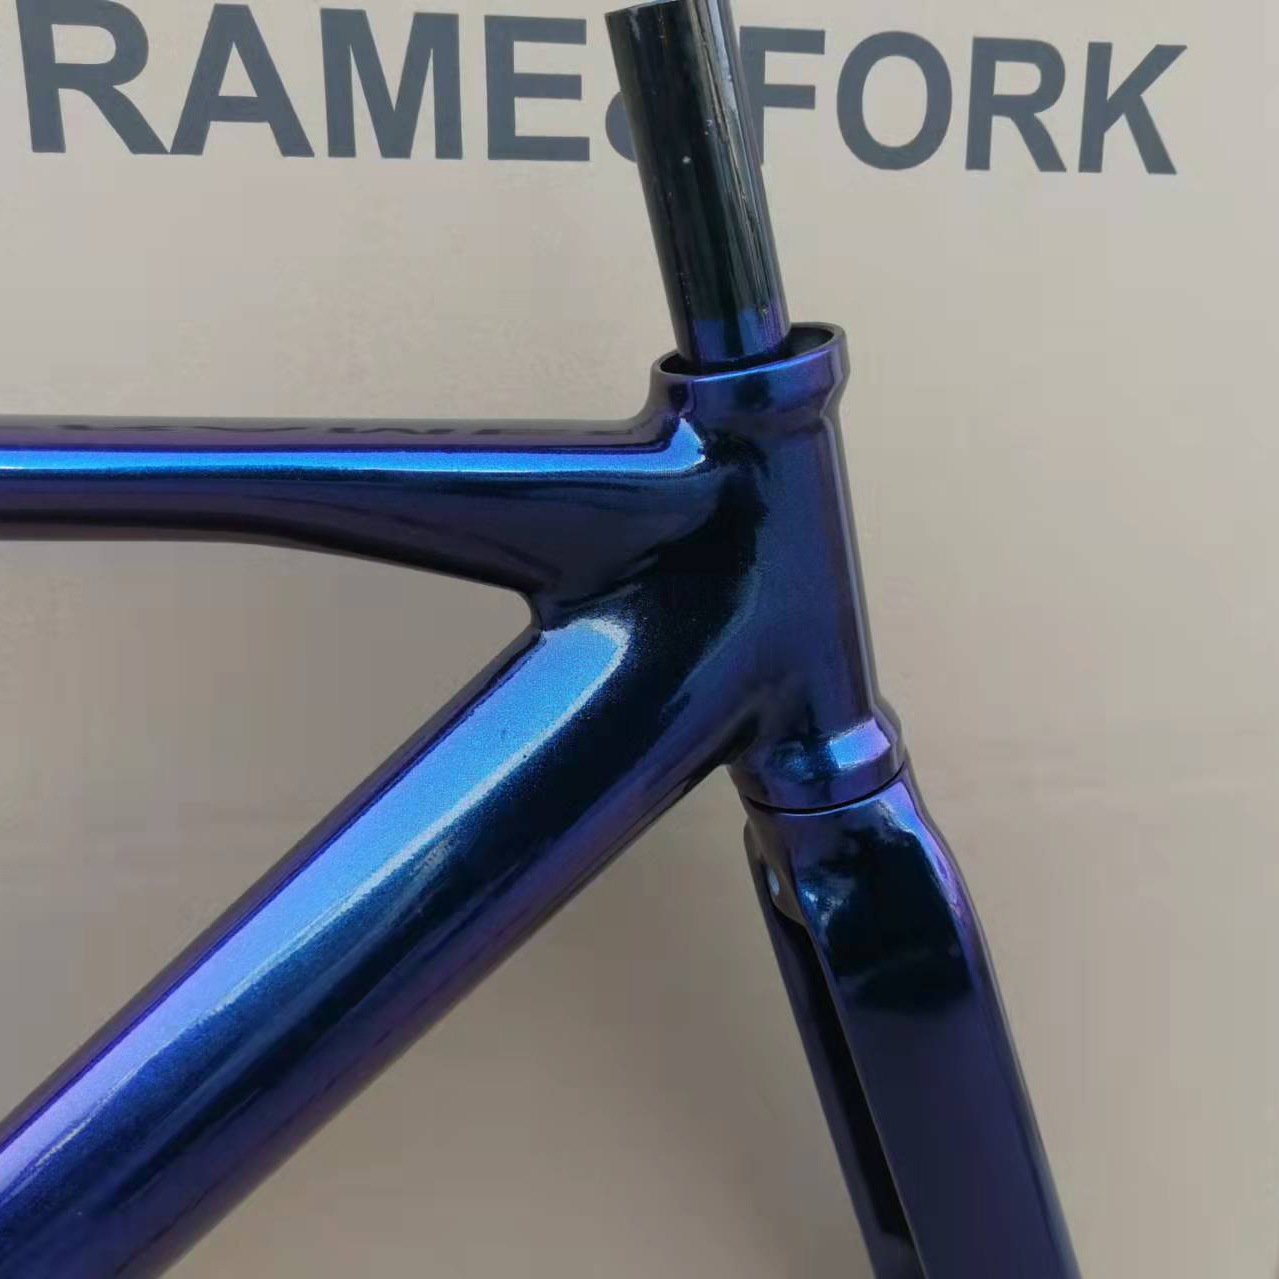 700 ° C Fixed Gear Bicycle Frame Aluminiumlegierung niedriger Windbeständigkeit Rahmenset Rennstrecke Fahrrad -Fahrrad -Teile mit Vordergabel